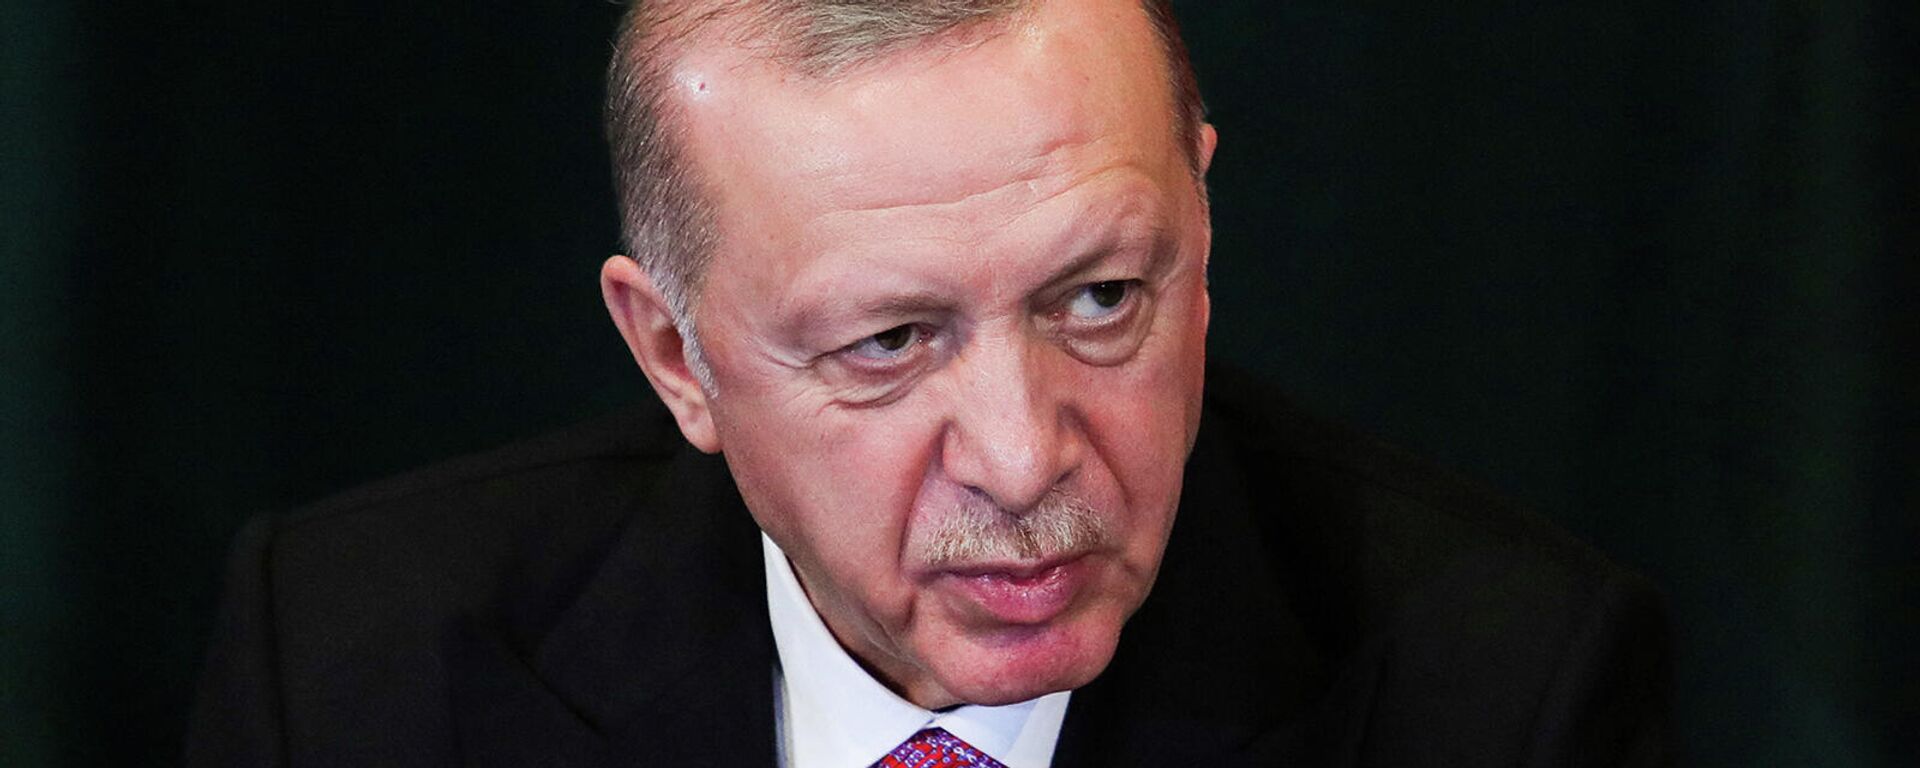 Президент Турции Реджеп Тайип Эрдоган на пресс-конференции в Албагии (17 января 2022). Тирана - Sputnik Армения, 1920, 08.02.2022